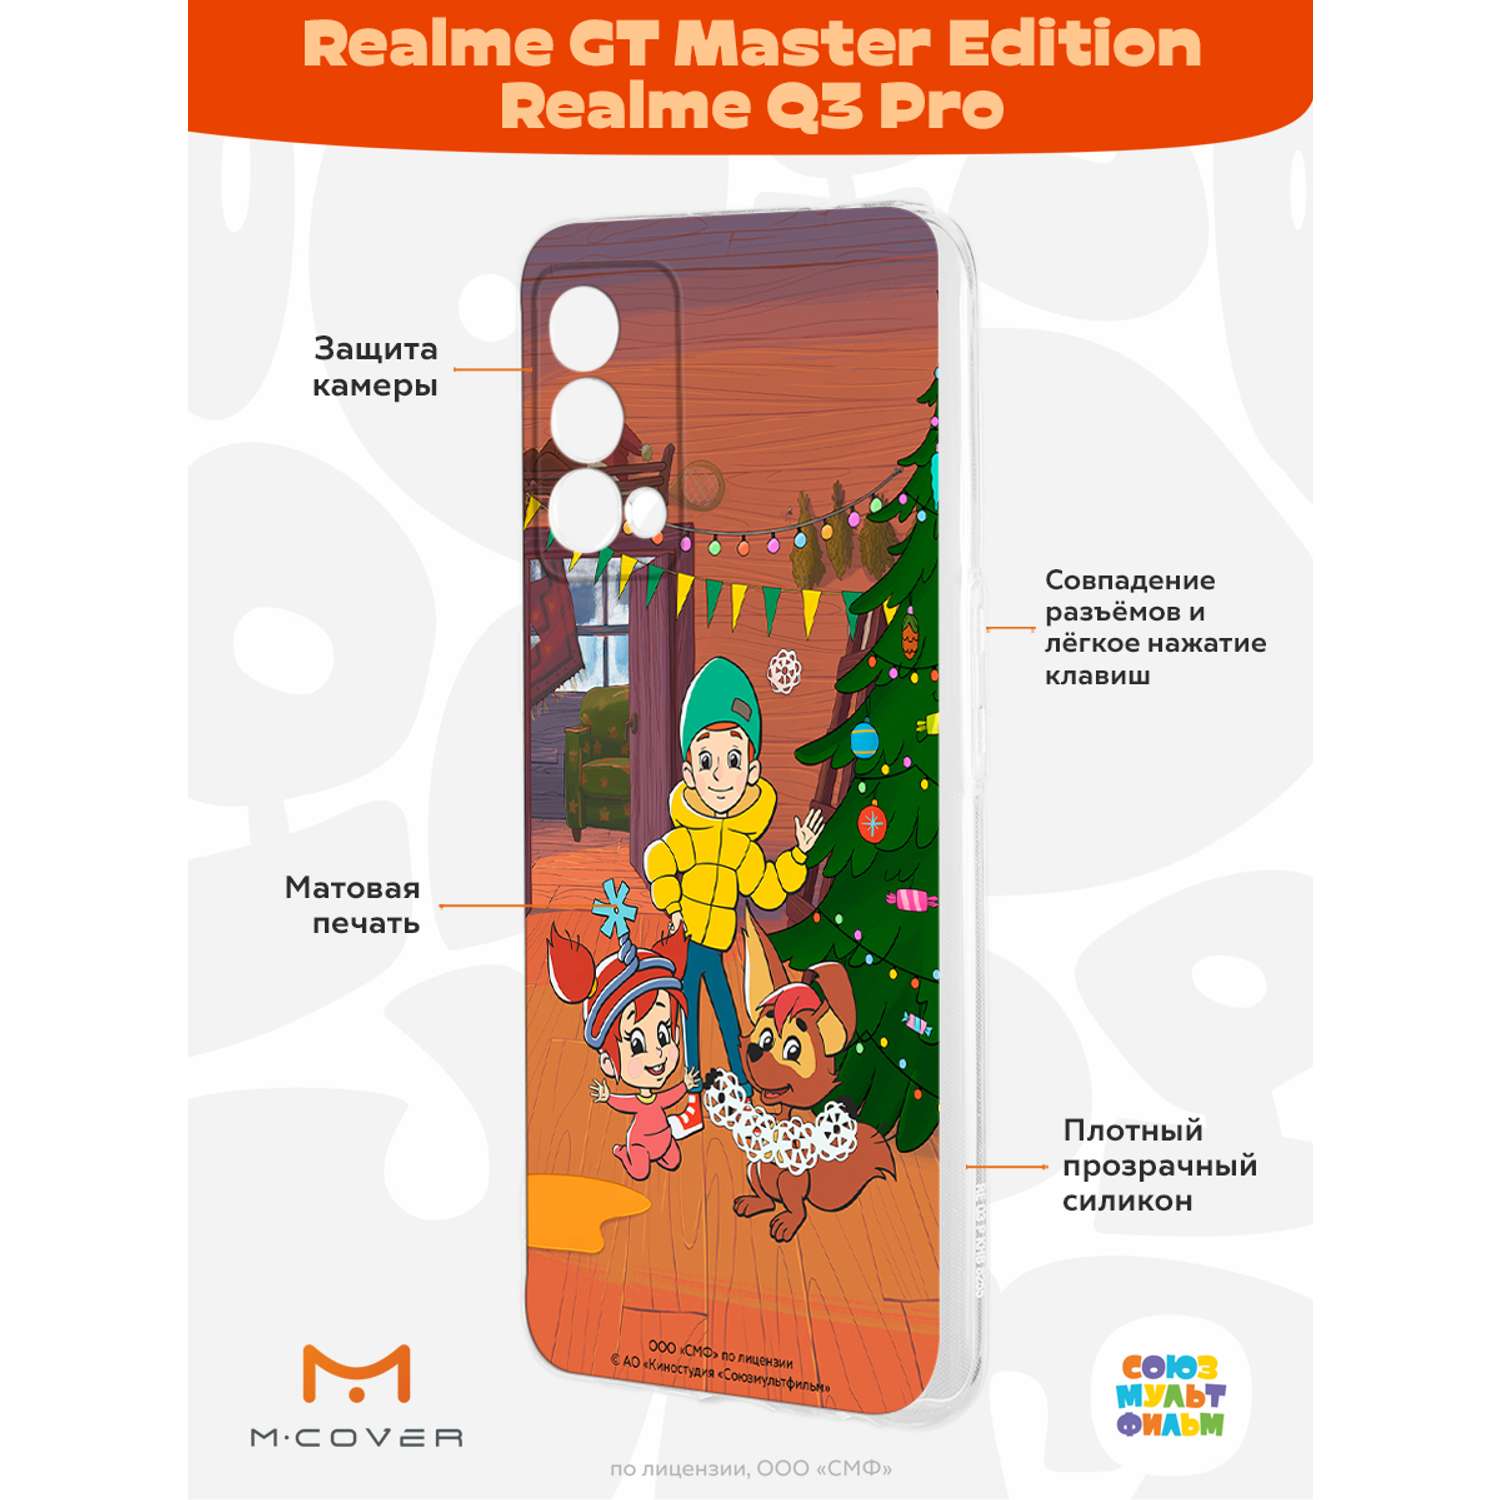 Силиконовый чехол Mcover для смартфона Realme GT Master Edition Q3 Pro Союзмультфильм Подготовка к празднику - фото 2